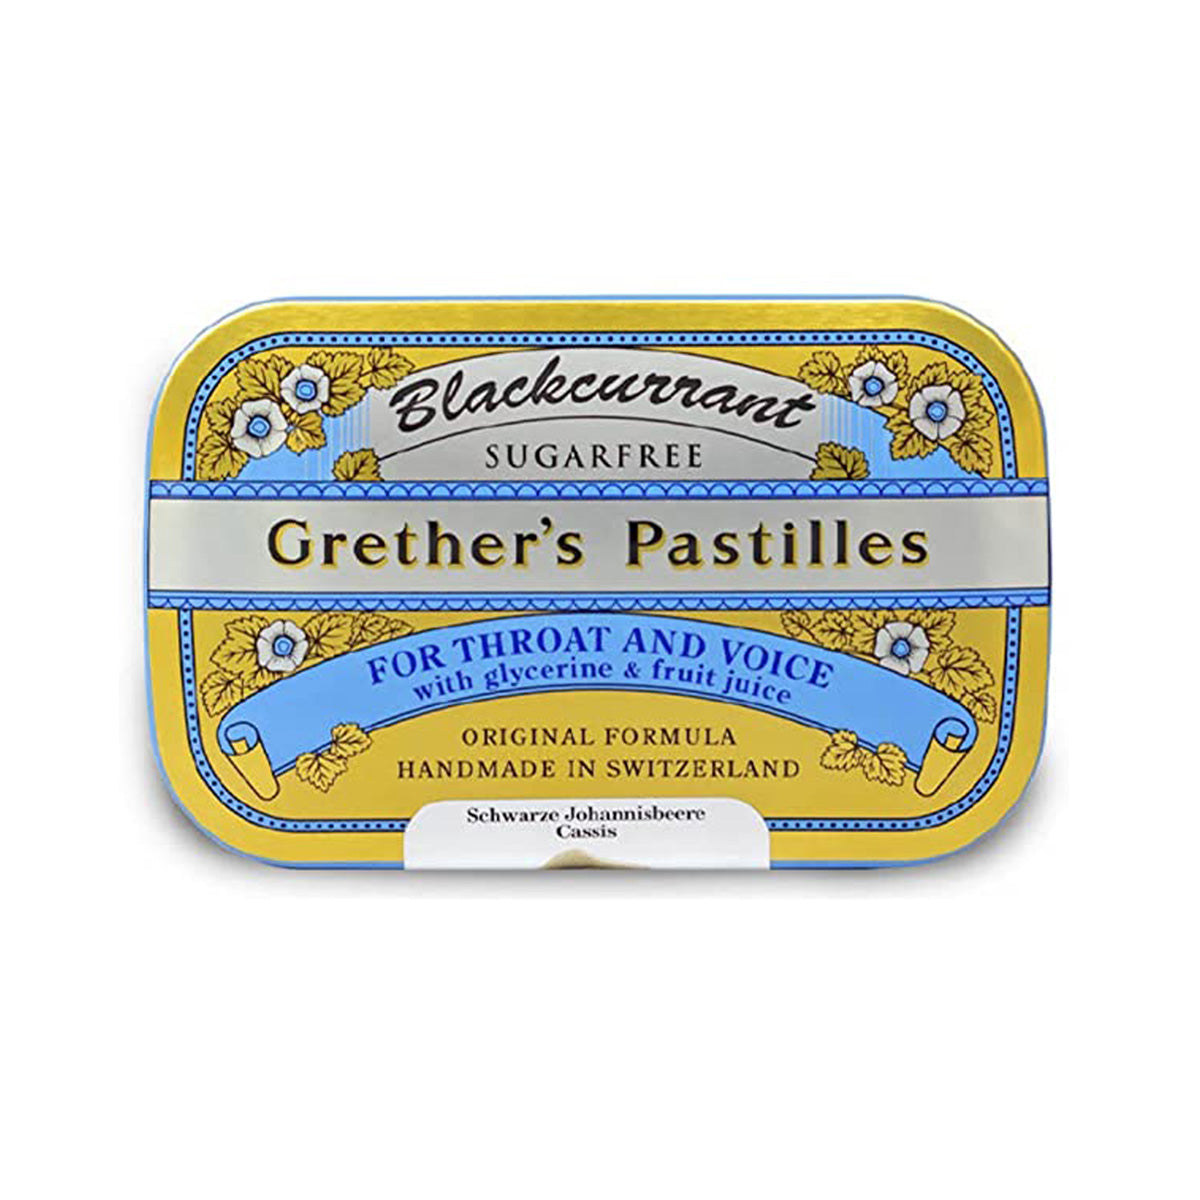 Grether's Pastilles Blackcurrant Sugar-Free 60g Glyndebourne Shop